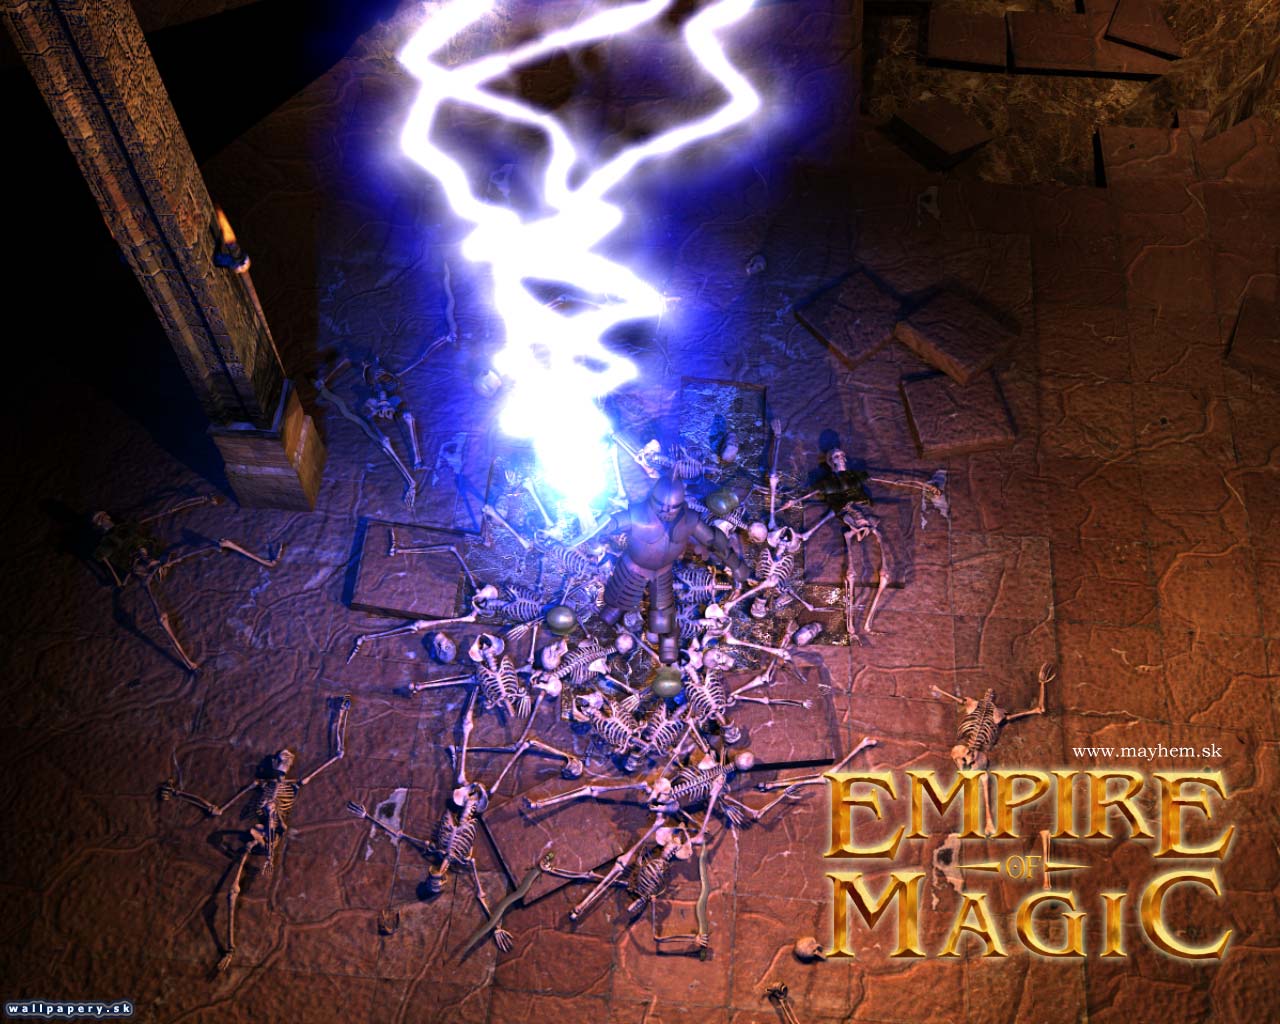 Empire of Magic - wallpaper 12